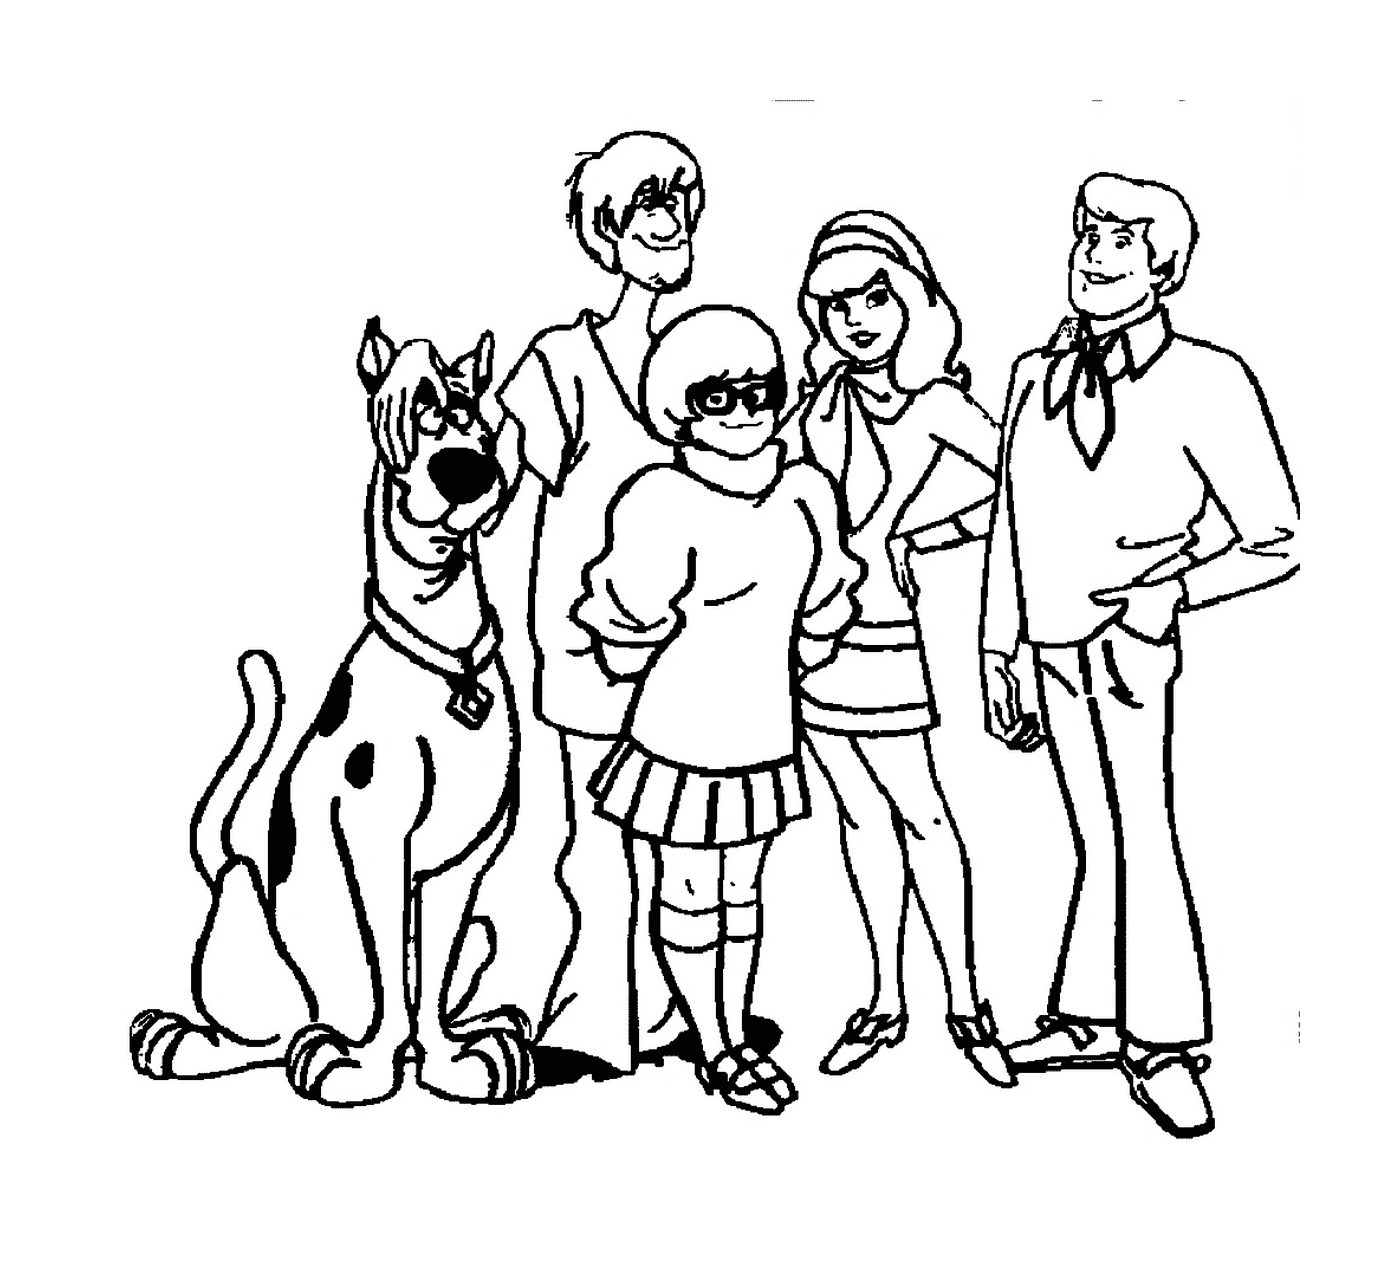   La bande de Scooby-Doo 